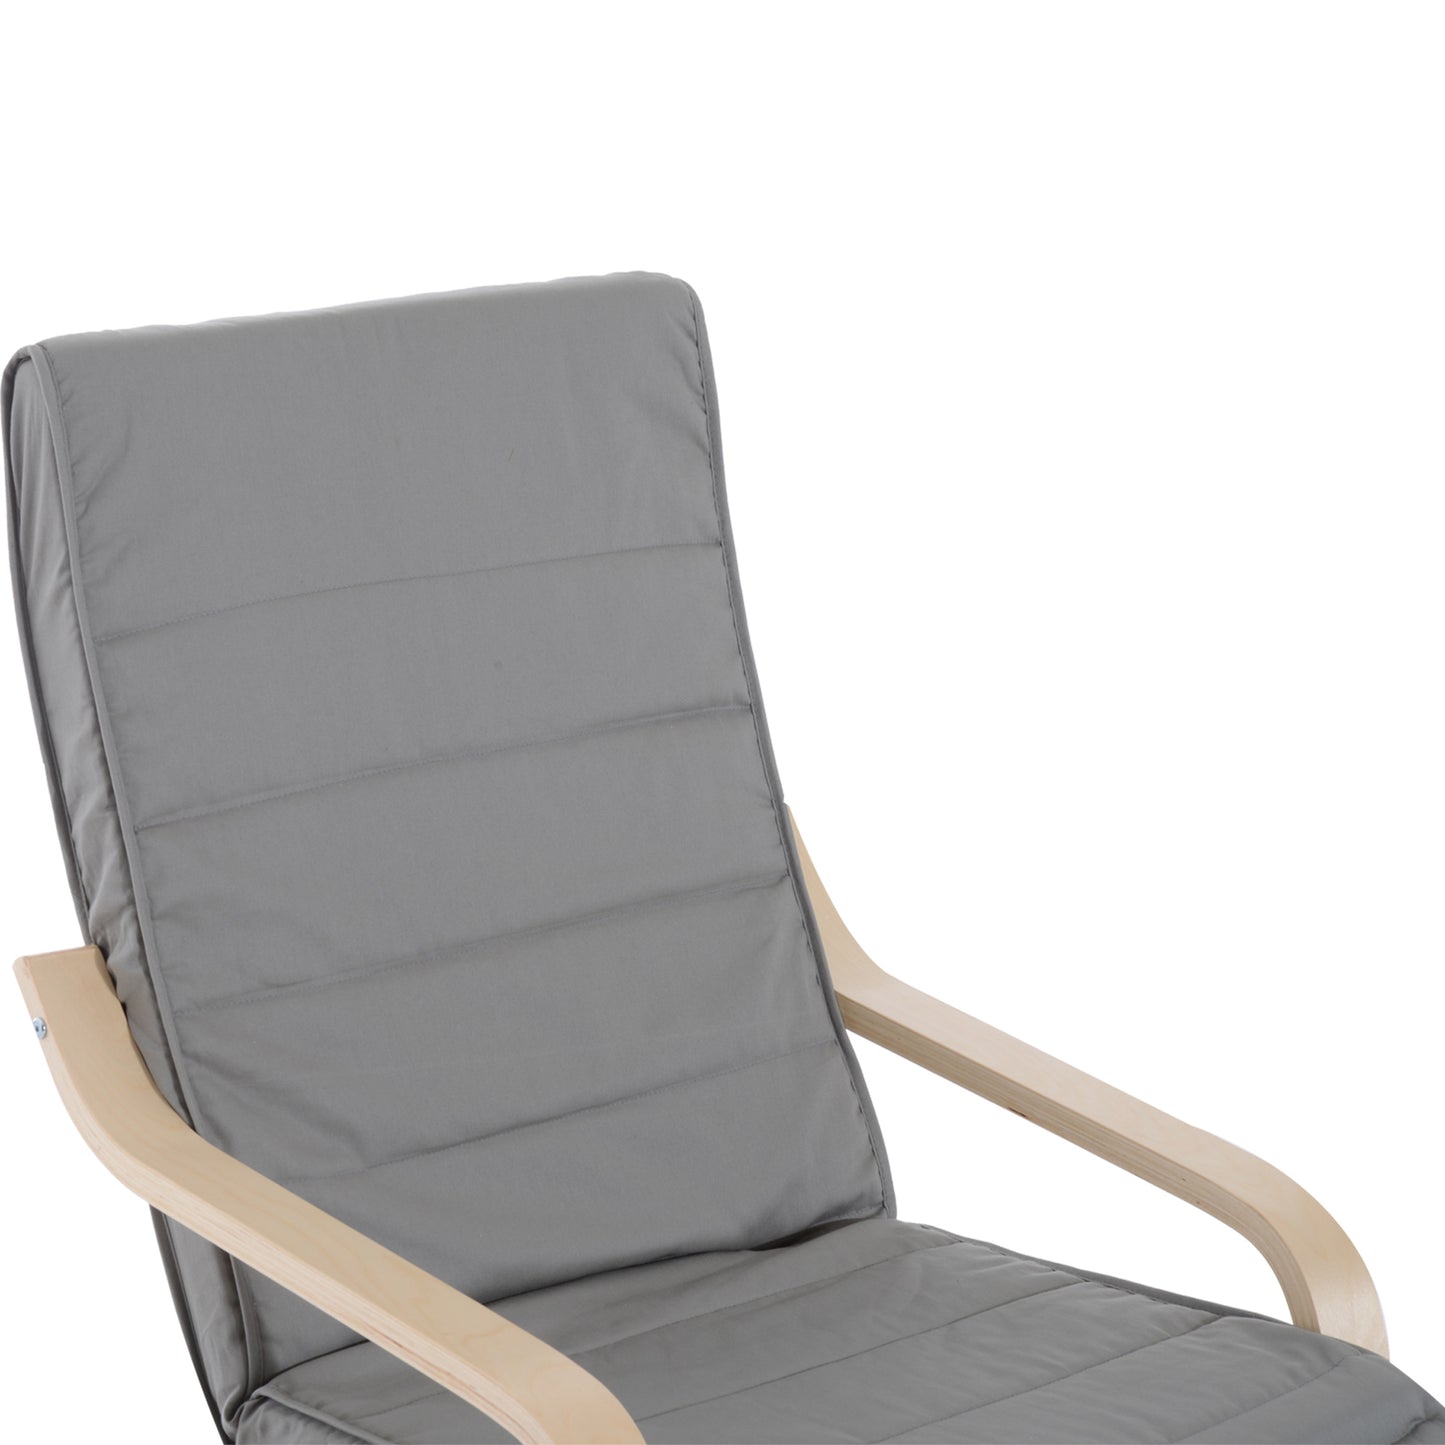 HOMCOM Deck Lounge Chair Garden Recliner Black Creamy White Adjustable